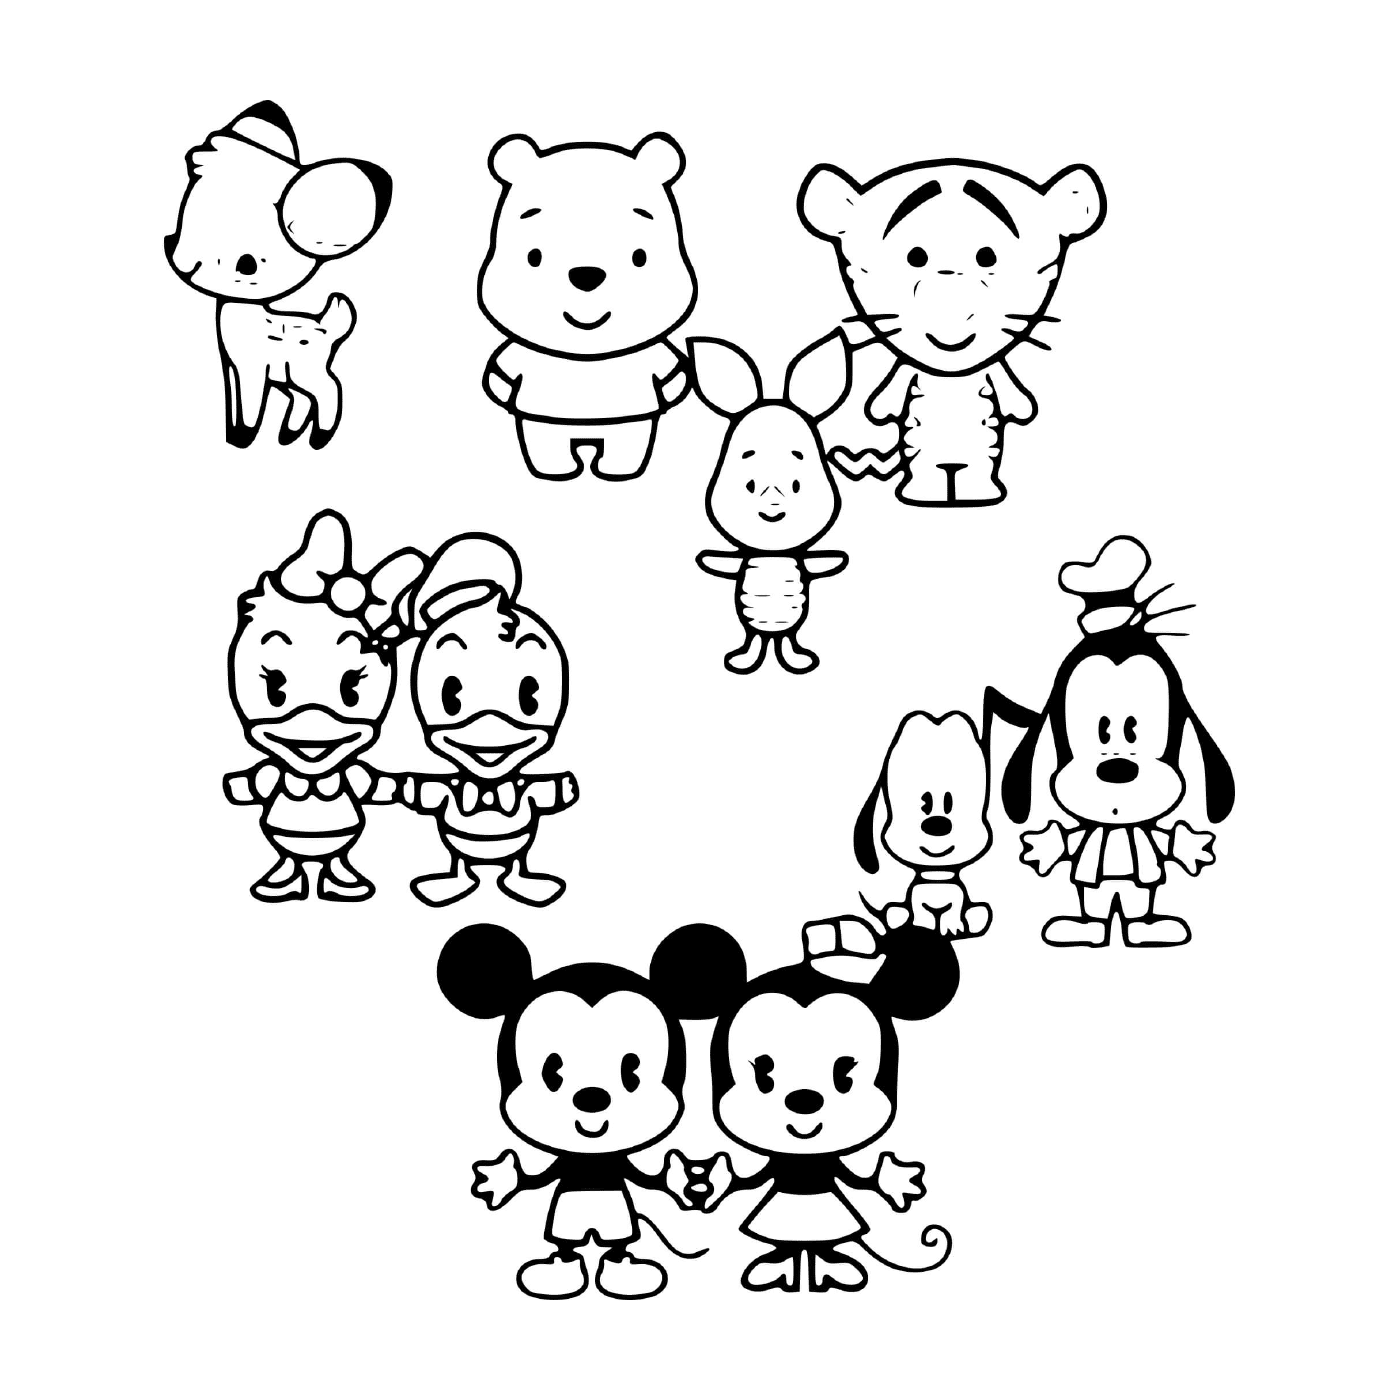   Personnages de dessins animés de Disney 